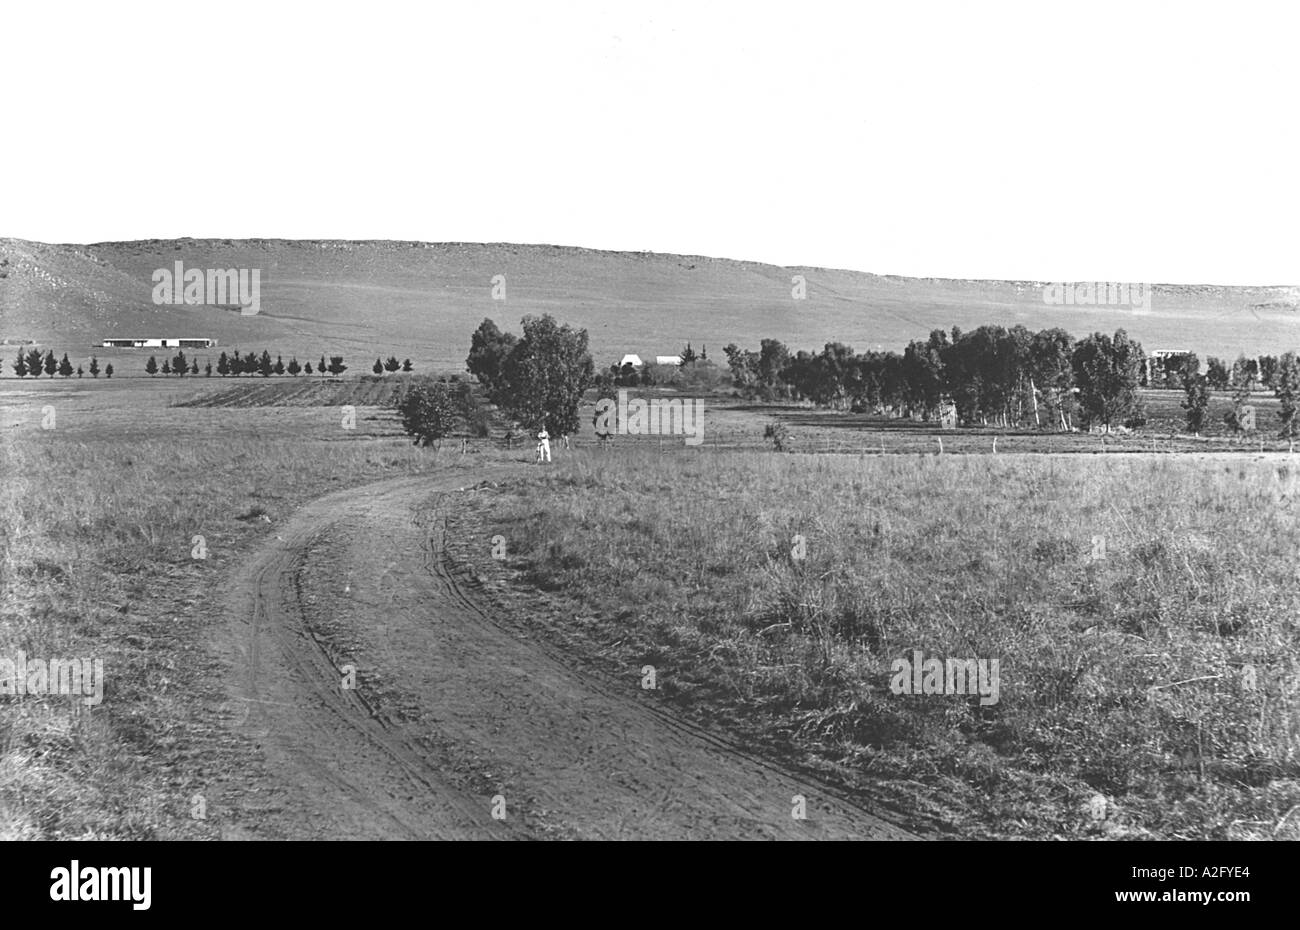 Tolstoy Farm, colonia di Mohandas Gandhi durante il suo movimento sudafricano, Transvaal, Johannesburg, Sudafrica, 1910, vecchia immagine dell'annata 1900s Foto Stock